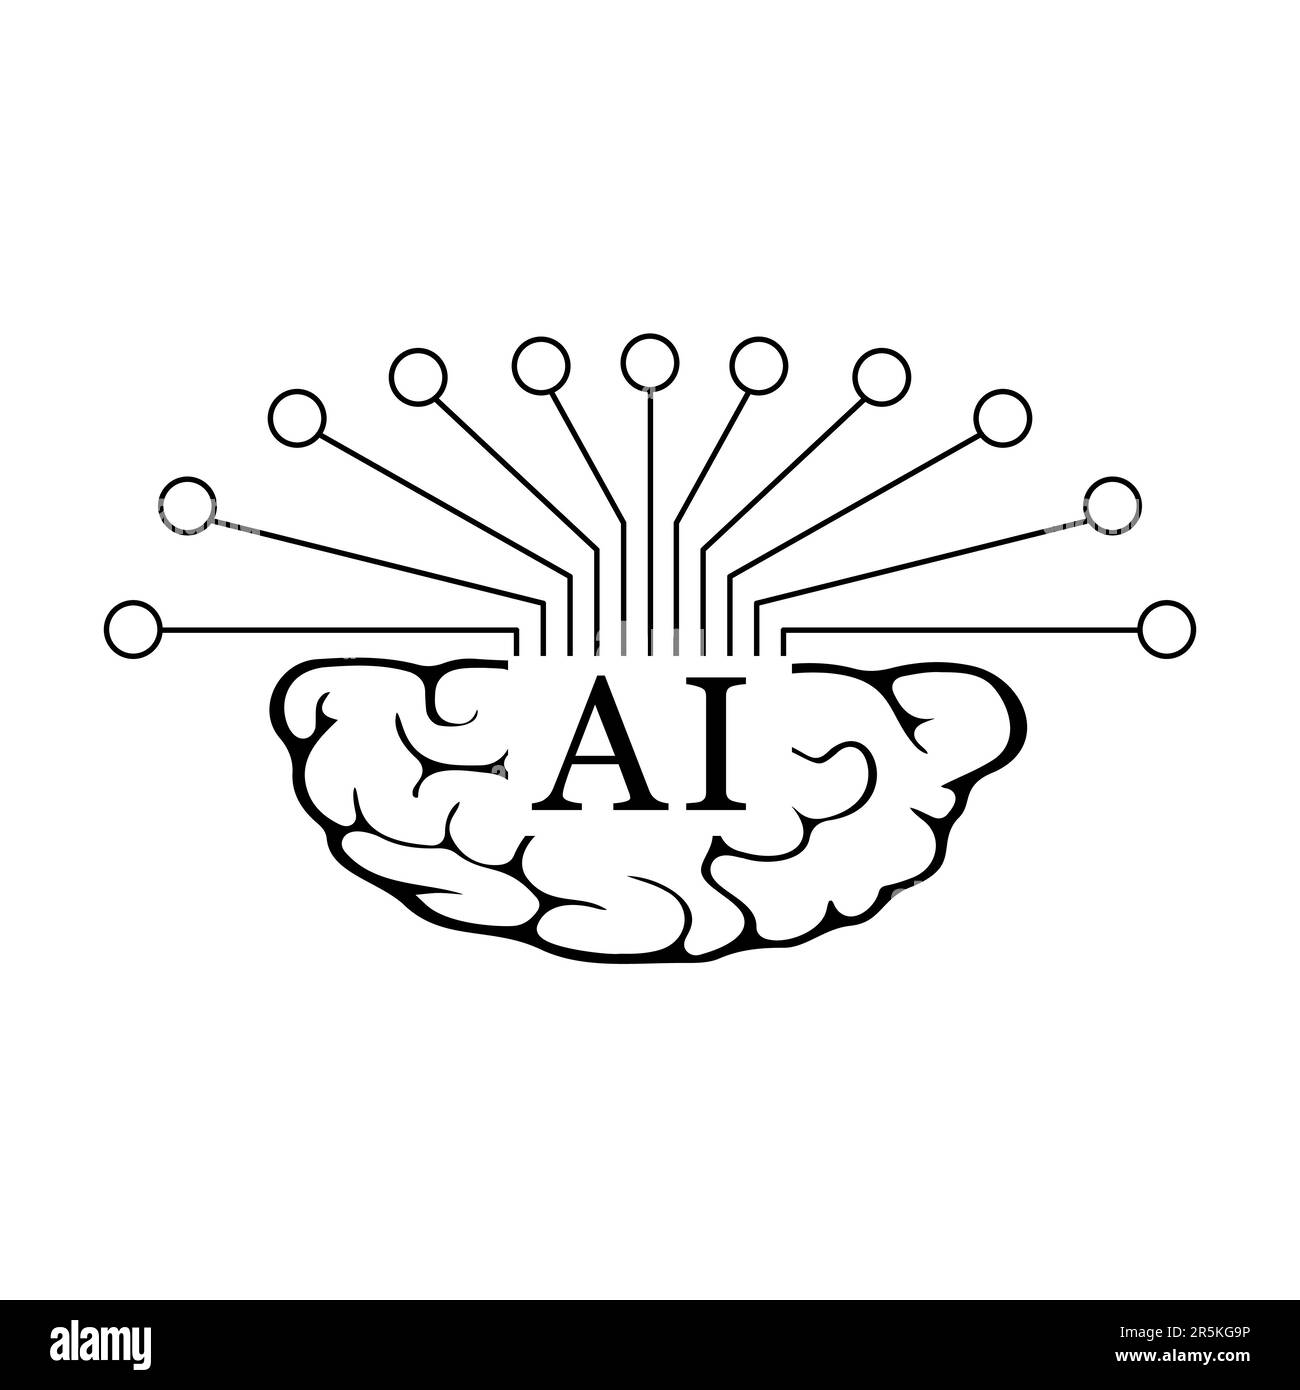 Un'icona di intelligenza artificiale nera piatta è un elemento di design grafico elegante e raffinato che rappresenta il concetto di intelligenza artificiale o intelligenza artificiale. Illustrazione Vettoriale